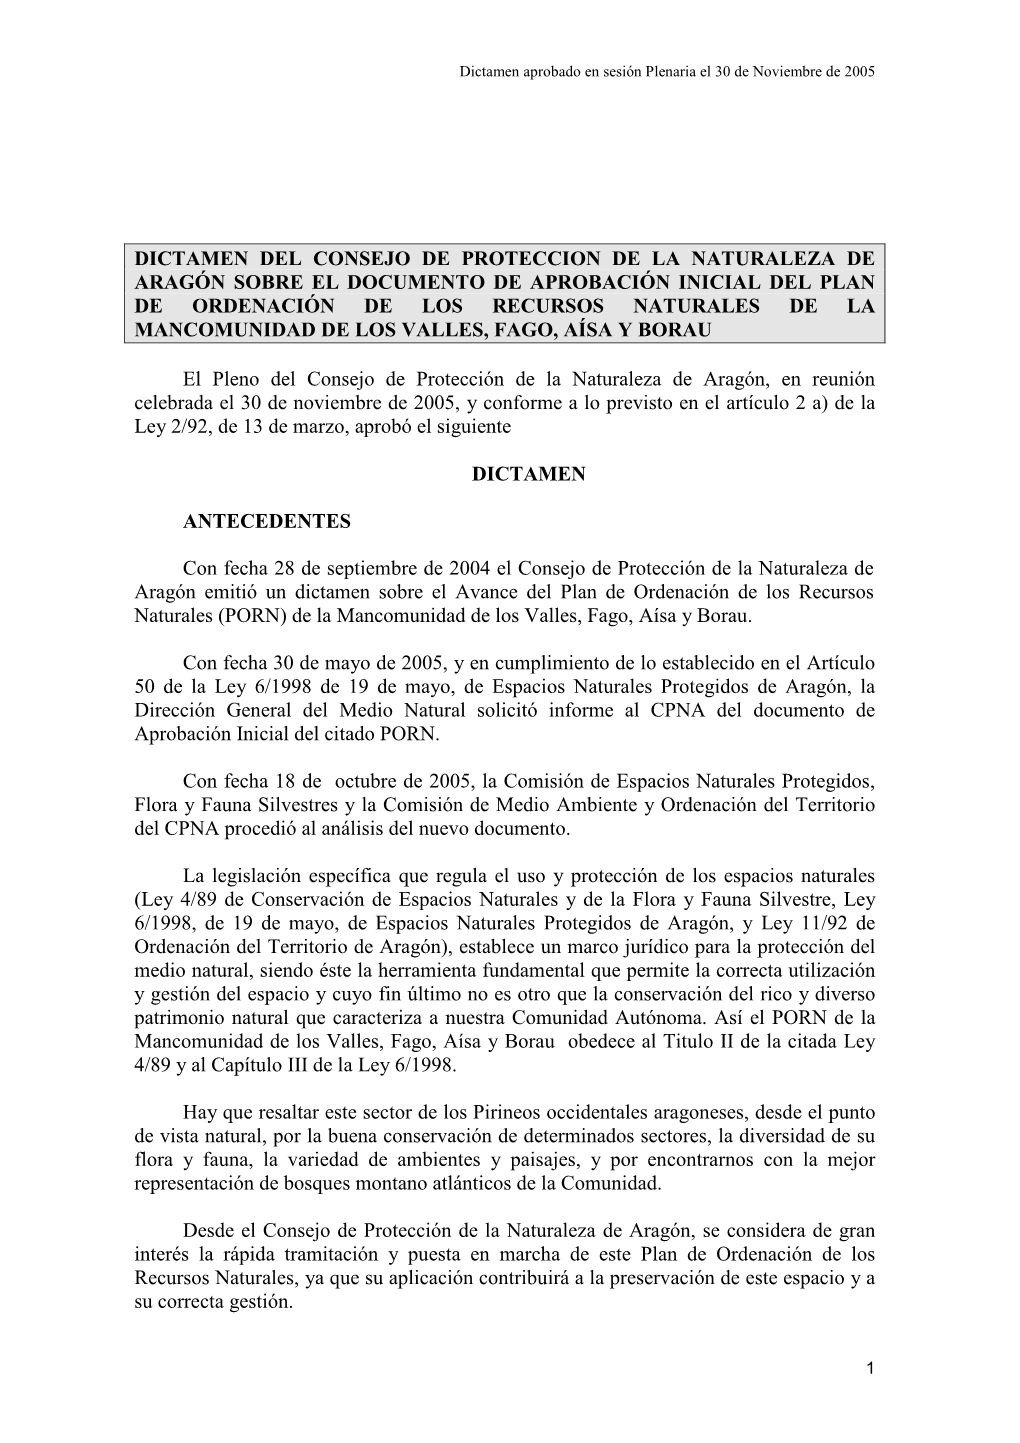 PORN De La Mancomunidad De Los Valles, Fago, Aísa Y Borau Obedece Al Titulo II De La Citada Ley 4/89 Y Al Capítulo III De La Ley 6/1998